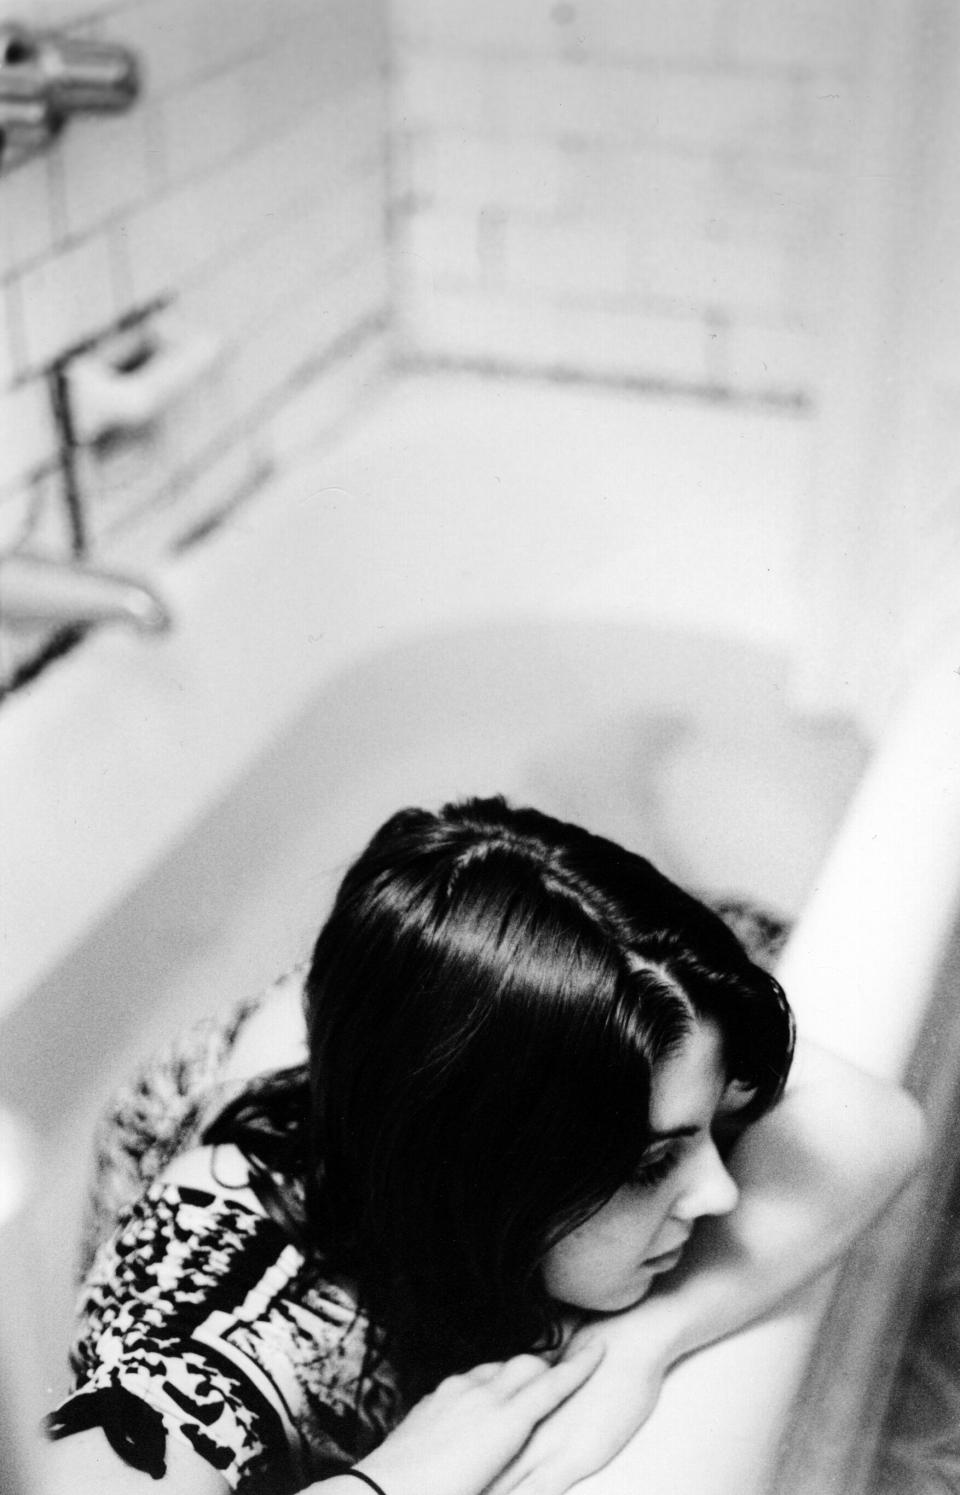 A woman in a bathtub.